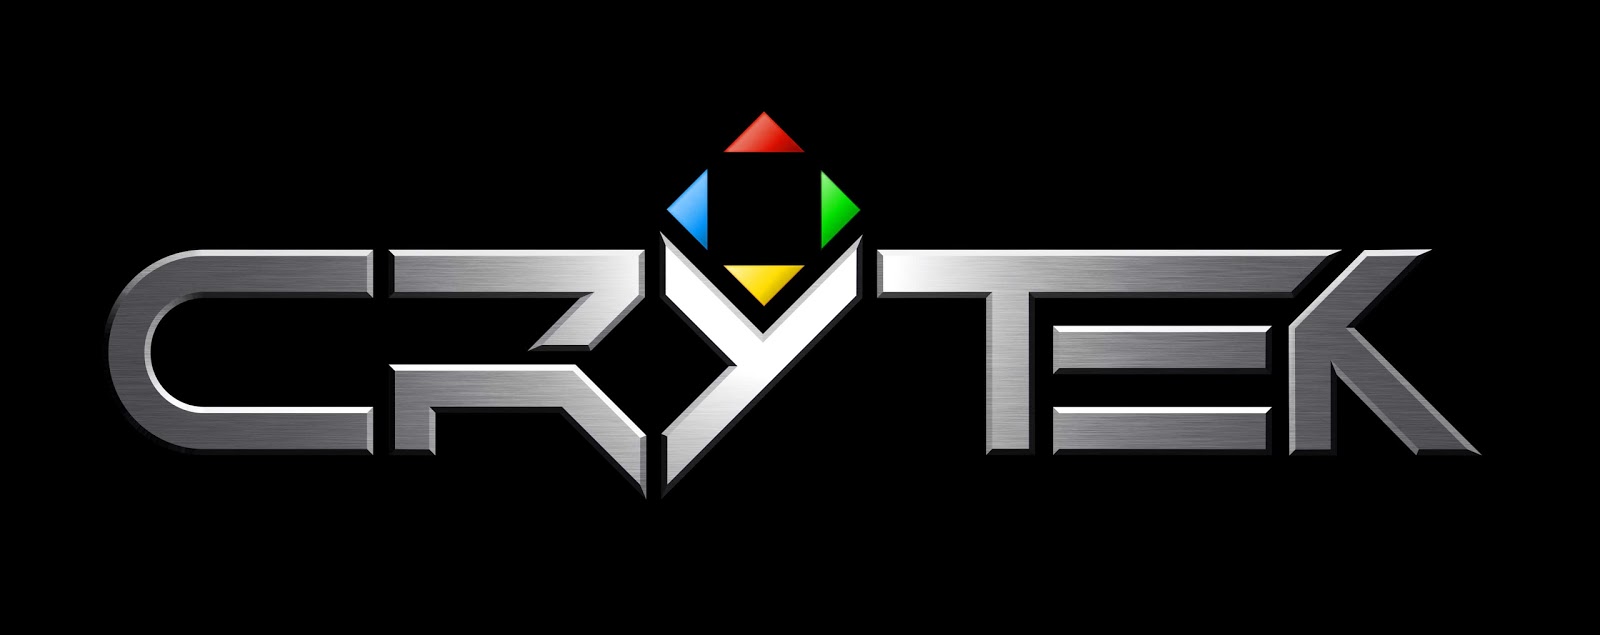 crytek Logo photo - 1